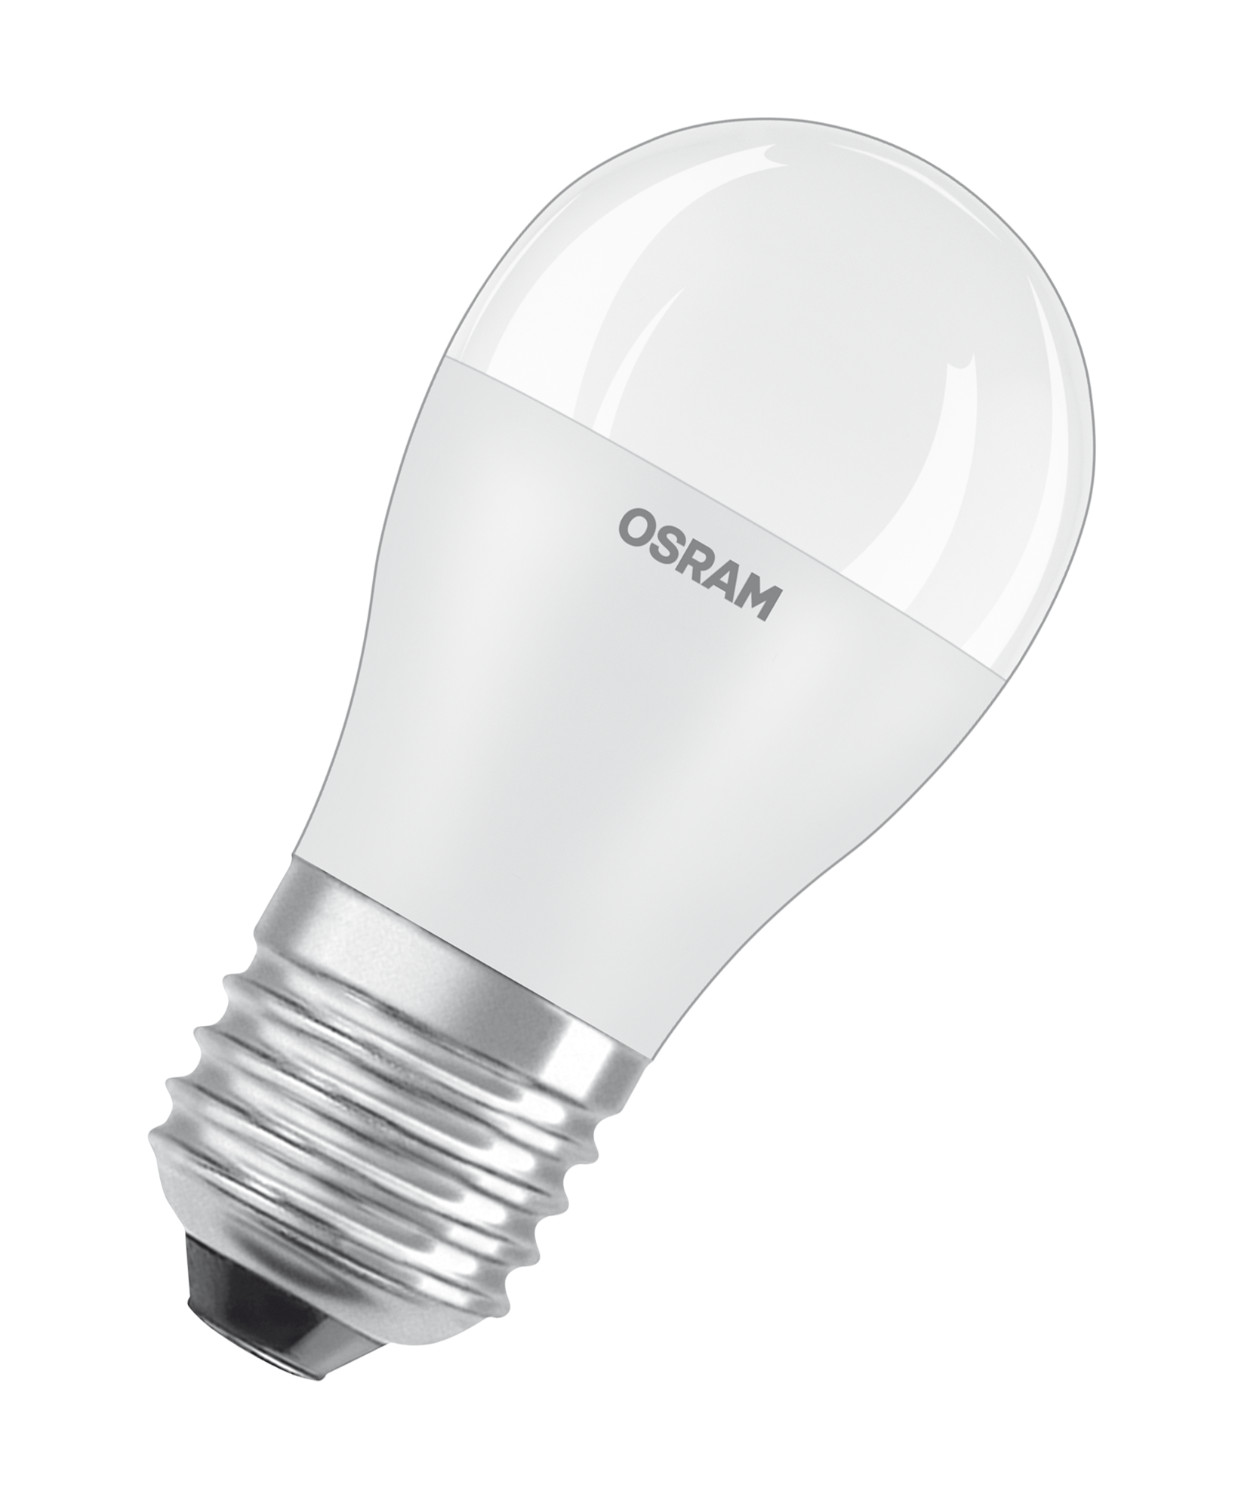 Osram Светодиодная лампа LED STAR Classic P 8W (замена 75Вт),нейтральный белый свет, матовая колба, Е27